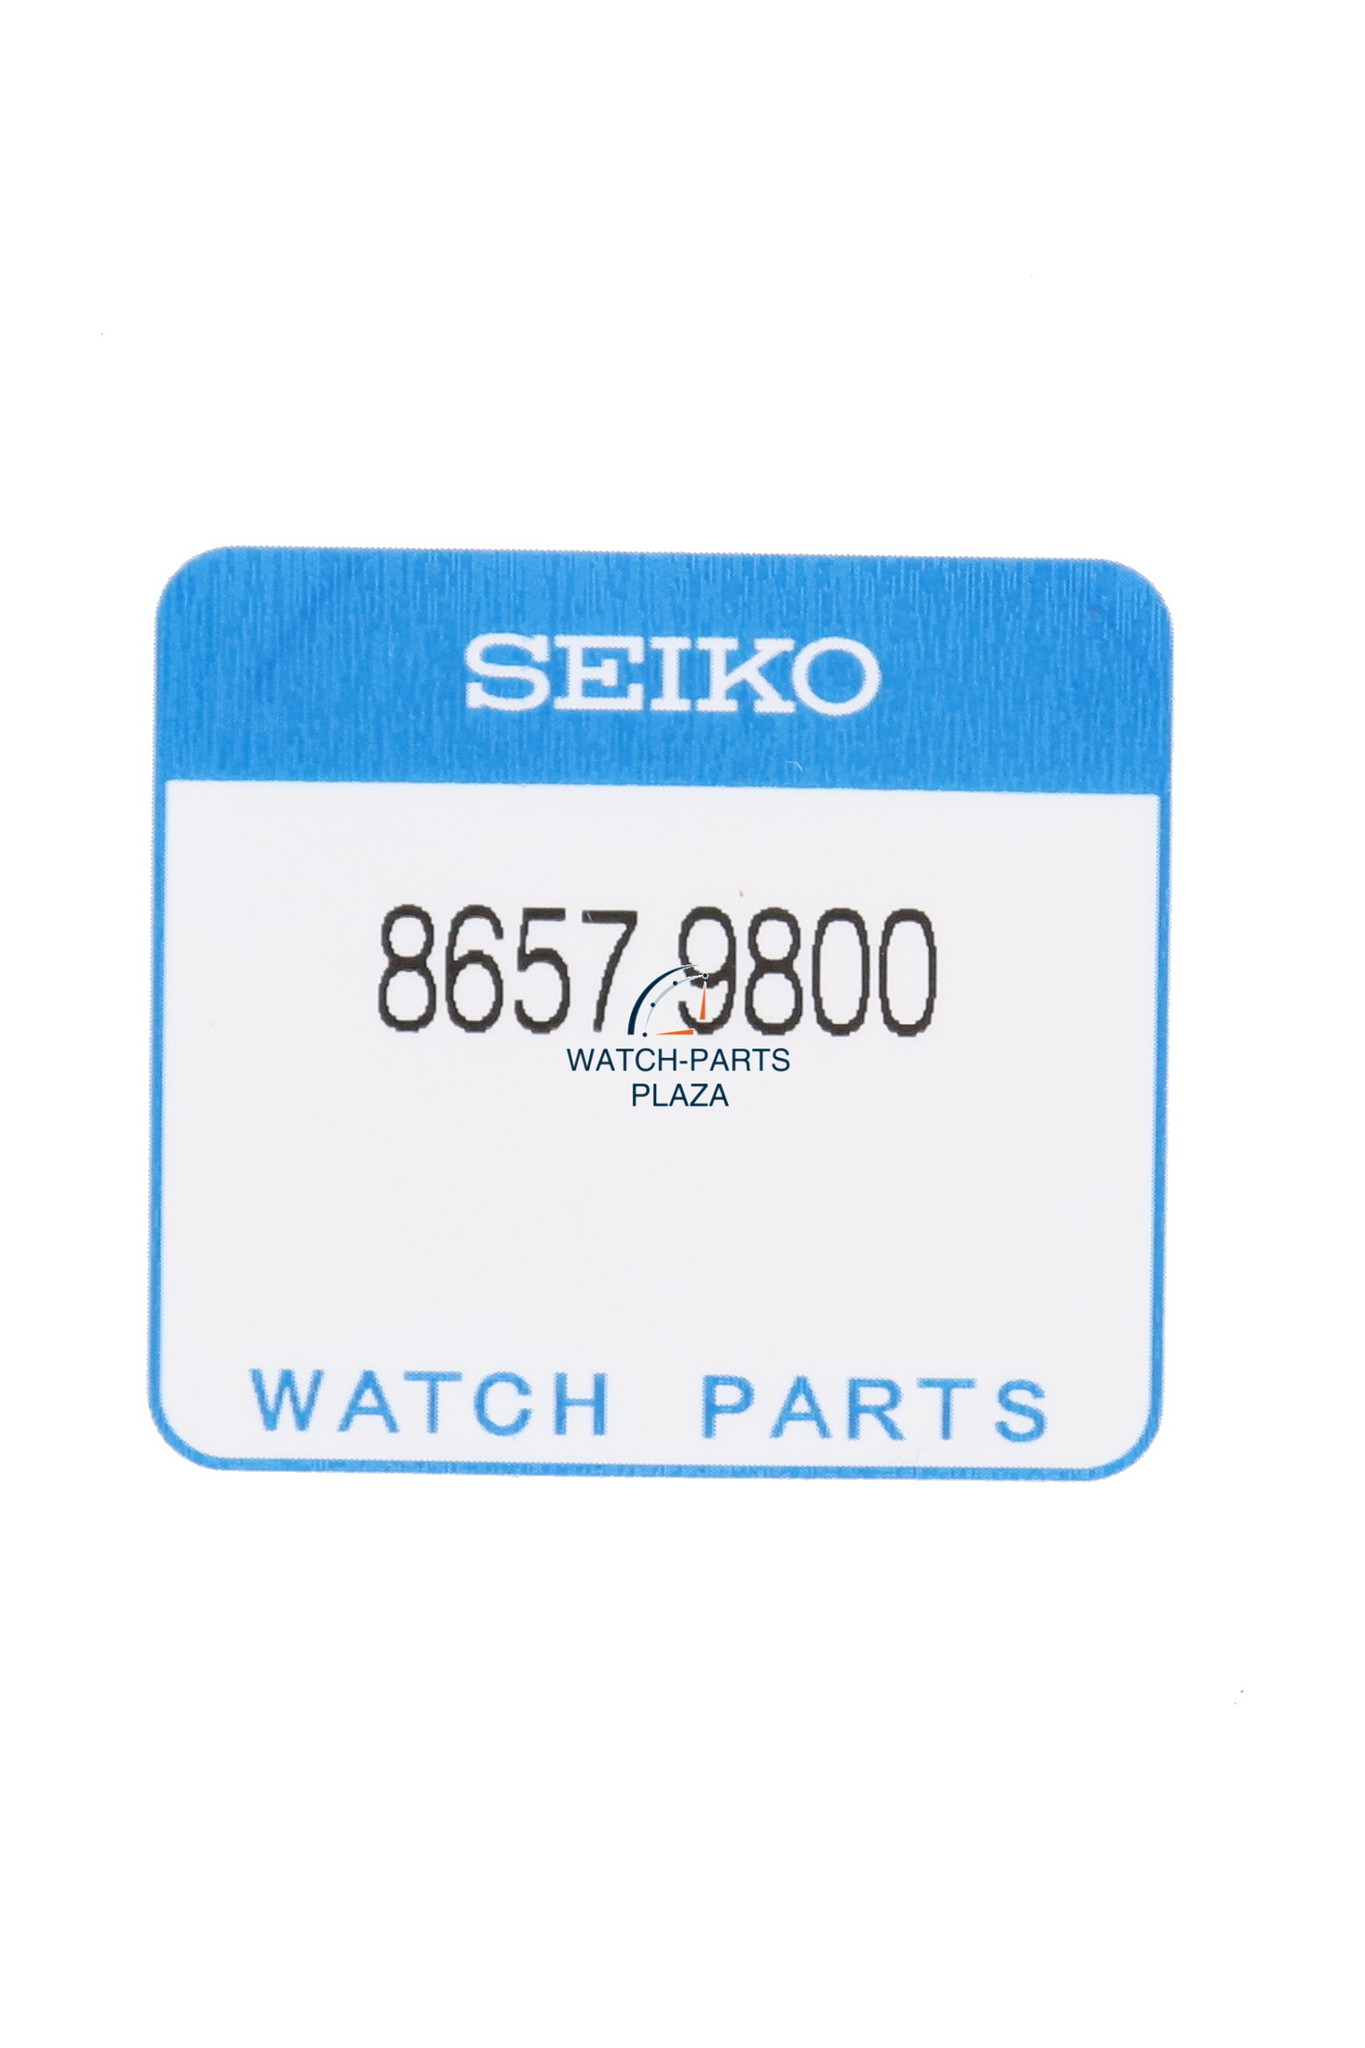 Seiko 86579800 bezel gasket / o-ring 6R15, 6R24, 6R27, 9R65, 9R66, -  WatchPlaza